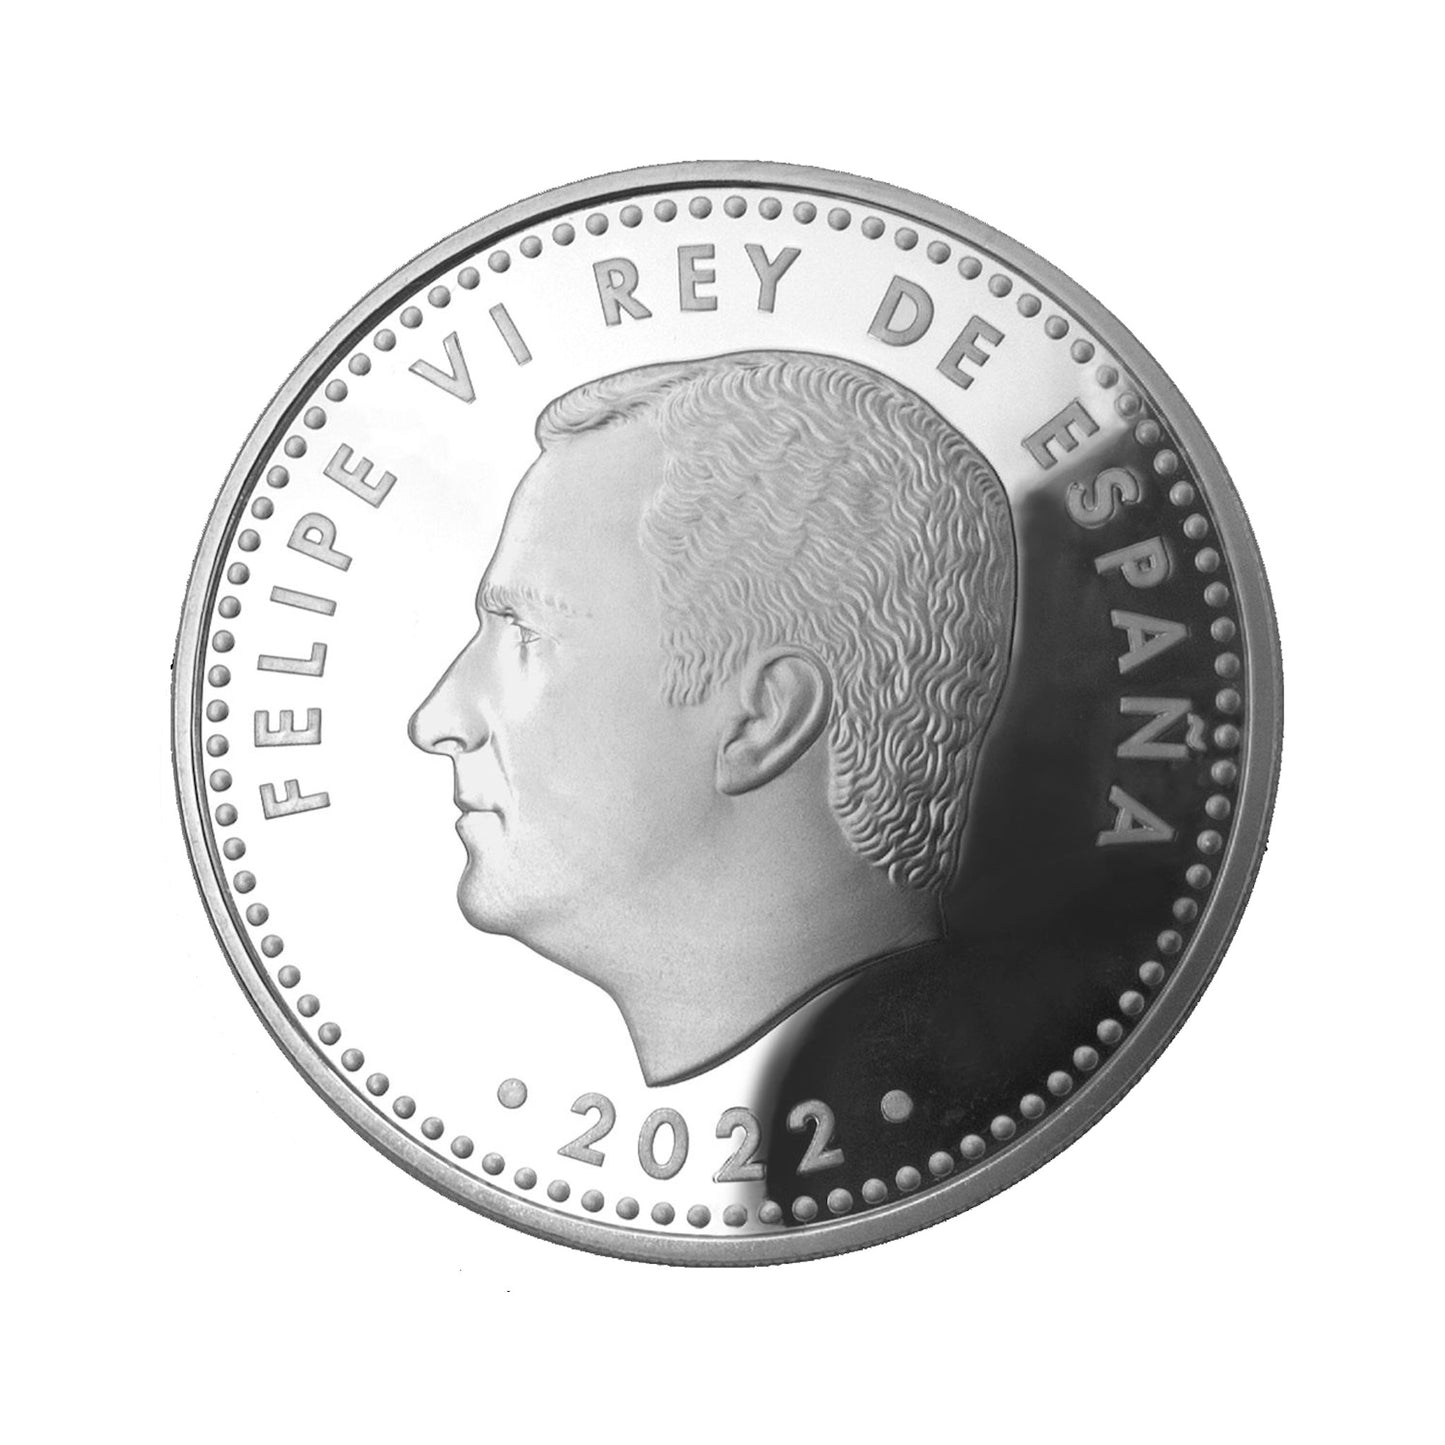 España - Moneda 10 euros en plata 2022 - Clara Campoamor